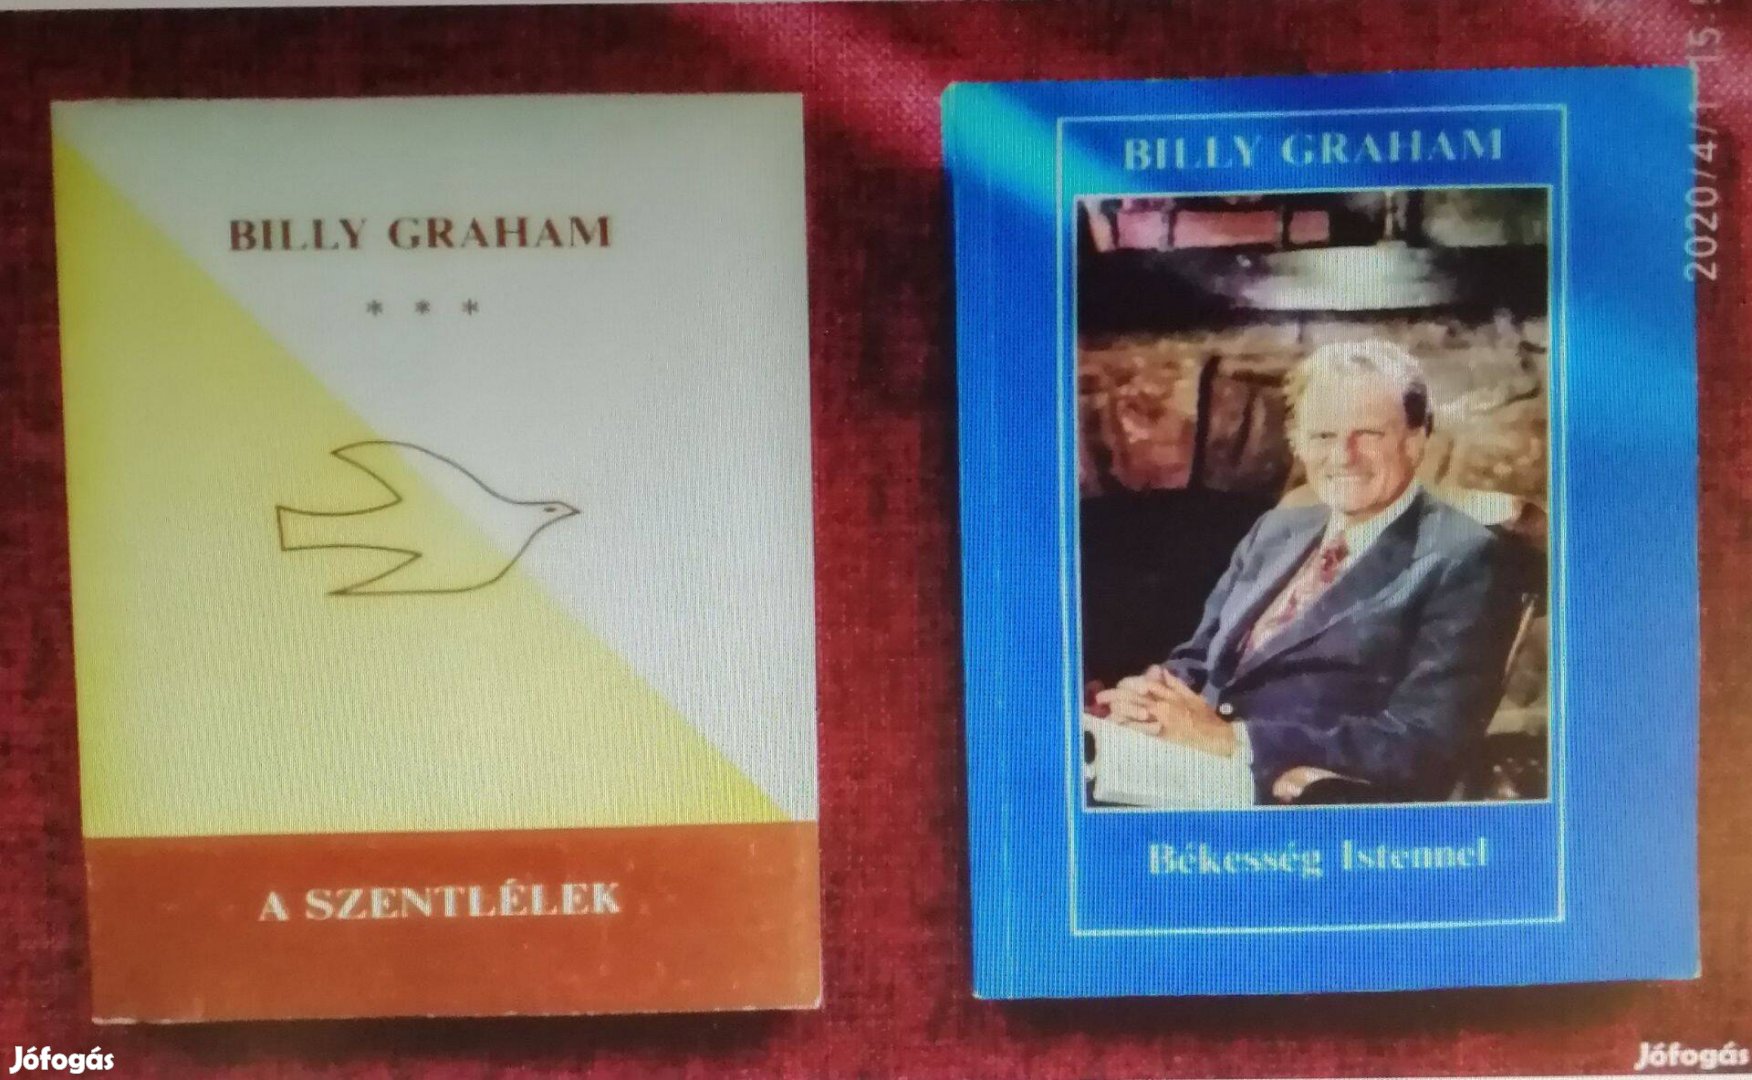 A szentlélek (The Holy Spirit) Billy Graham